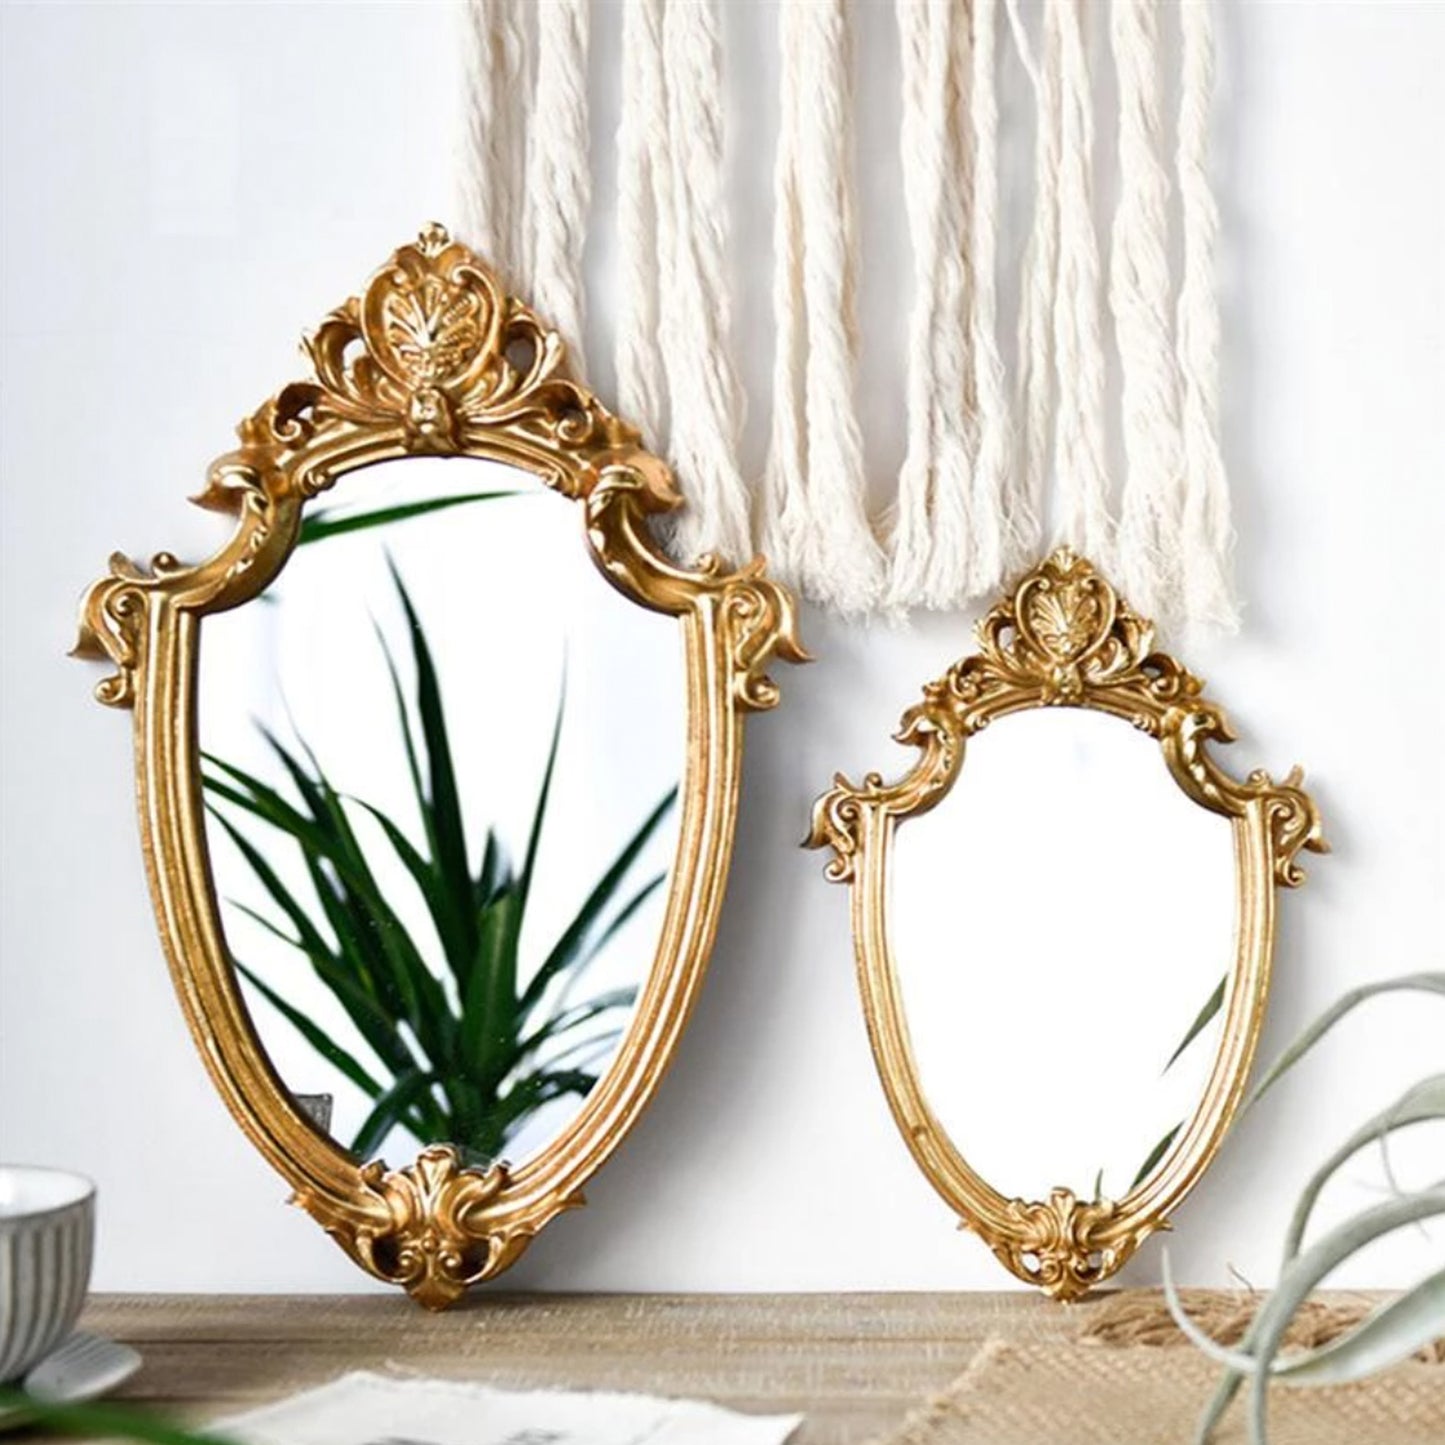 Specchio della principessa d'oro